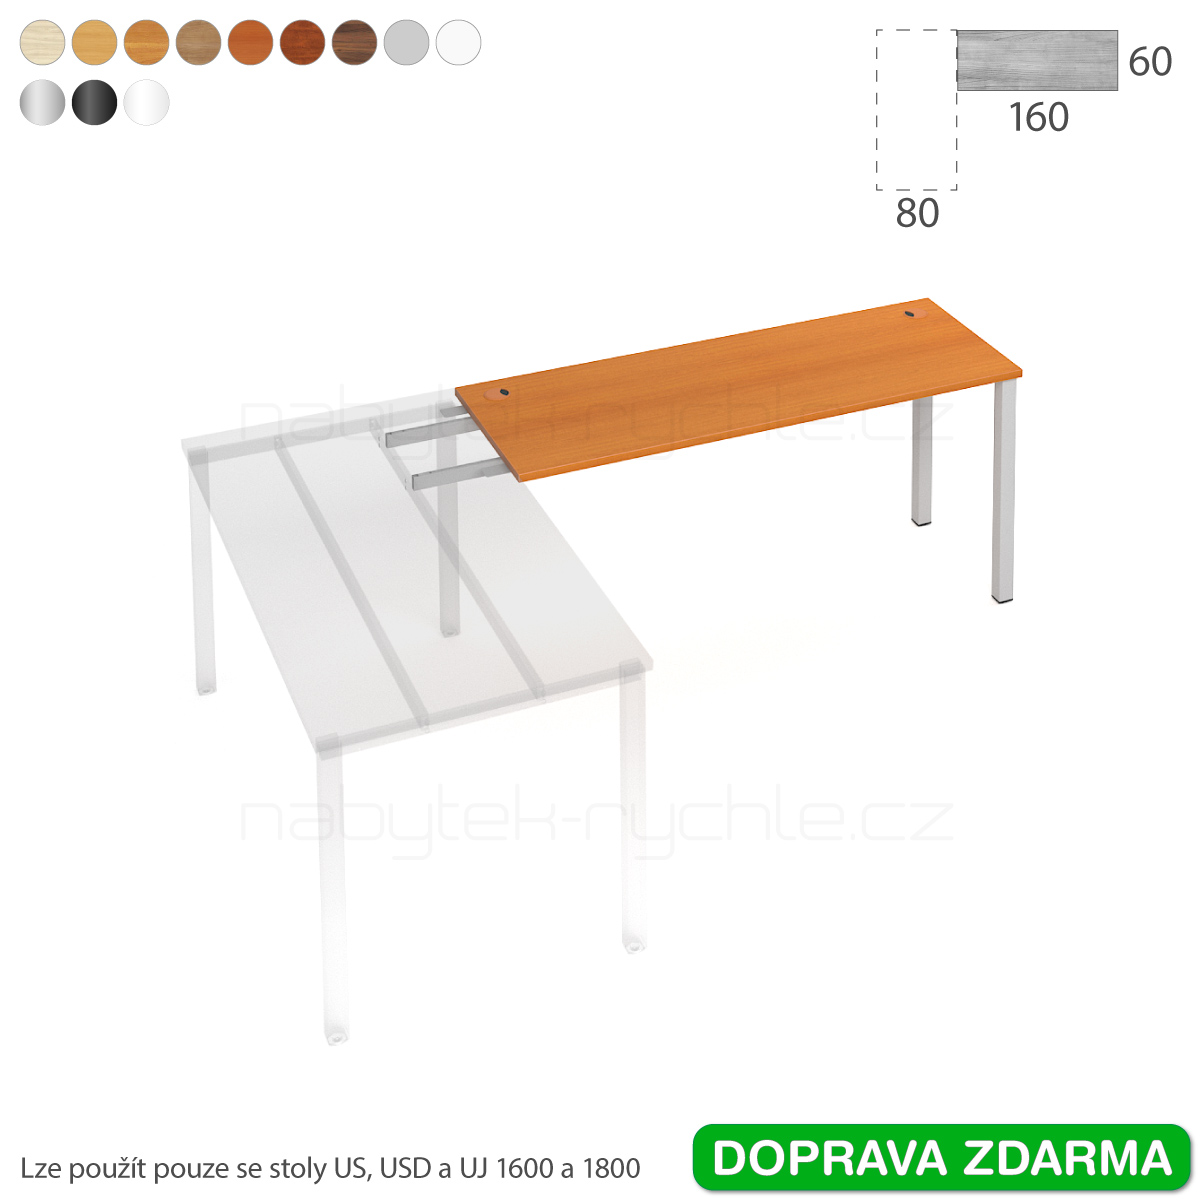 UE 1600 RU Hobis UNI - Stůl řetězící do úhlu 160 x 60